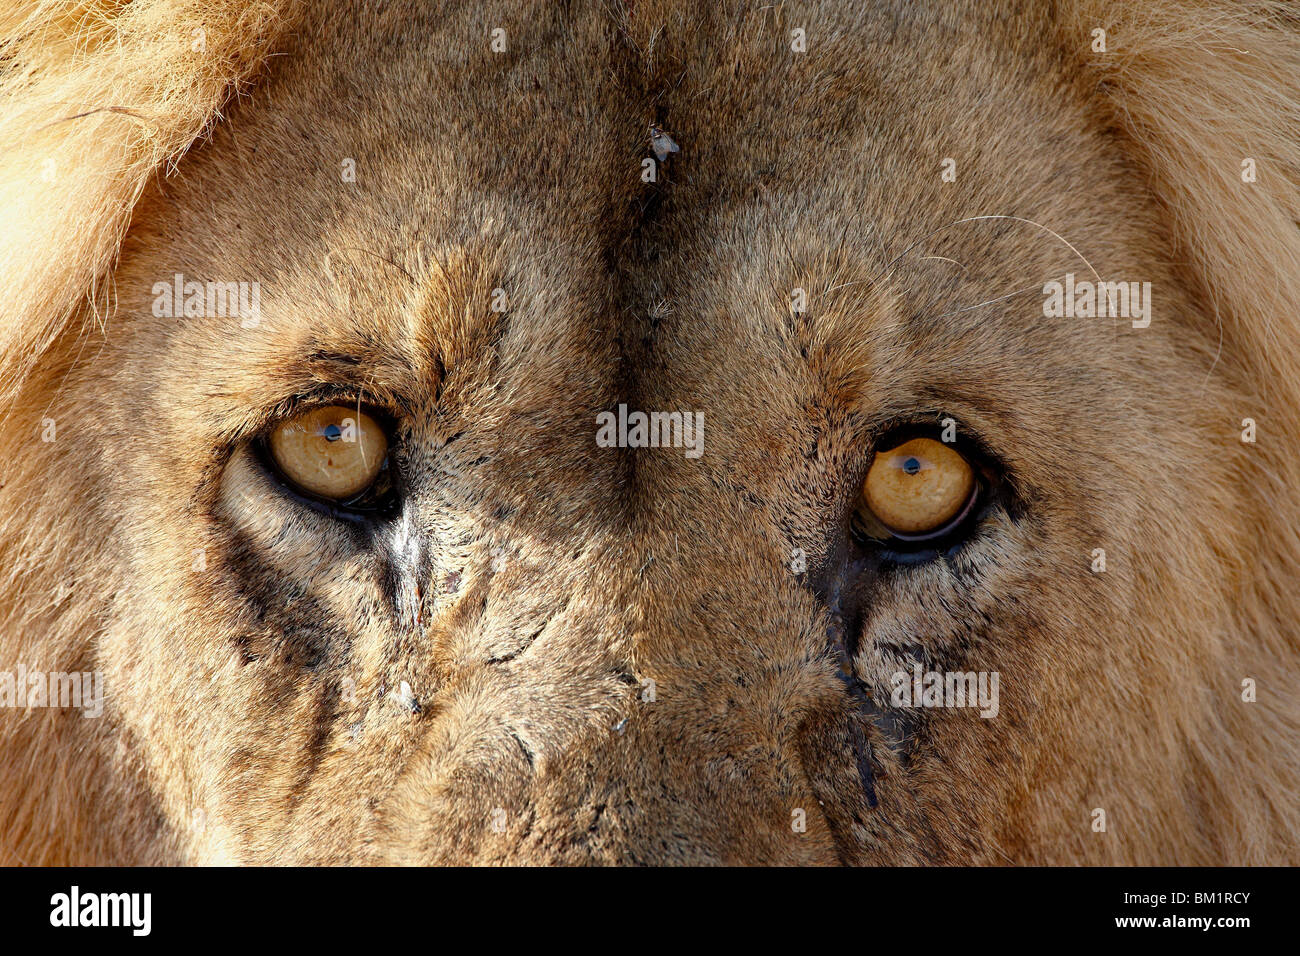 León (Panthera leo) ojos, el Parque Transfronterizo Kgalagadi, abarcando el antiguo Parque Nacional Kalahari Gemsbok, Sudáfrica Foto de stock